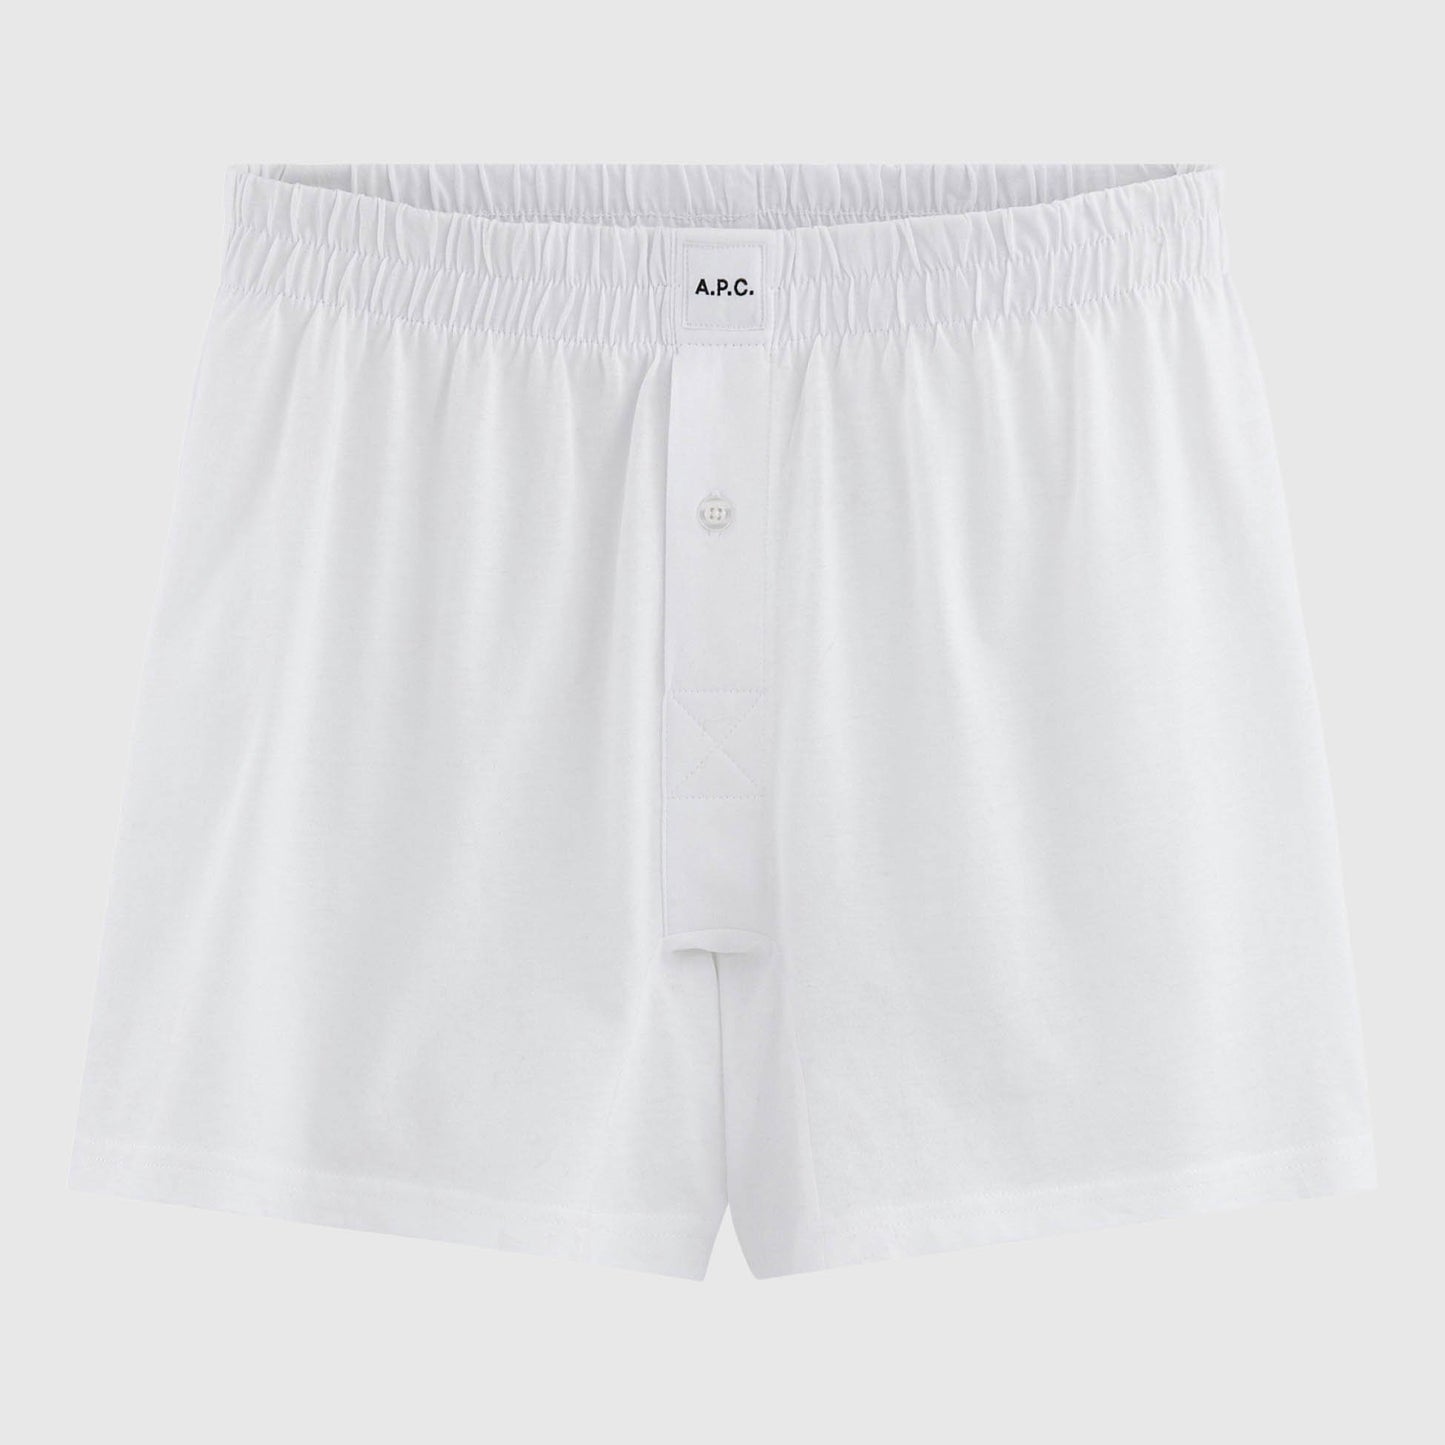 A.P.C. Calecon Cabourg Underwear - White Underwear APC 